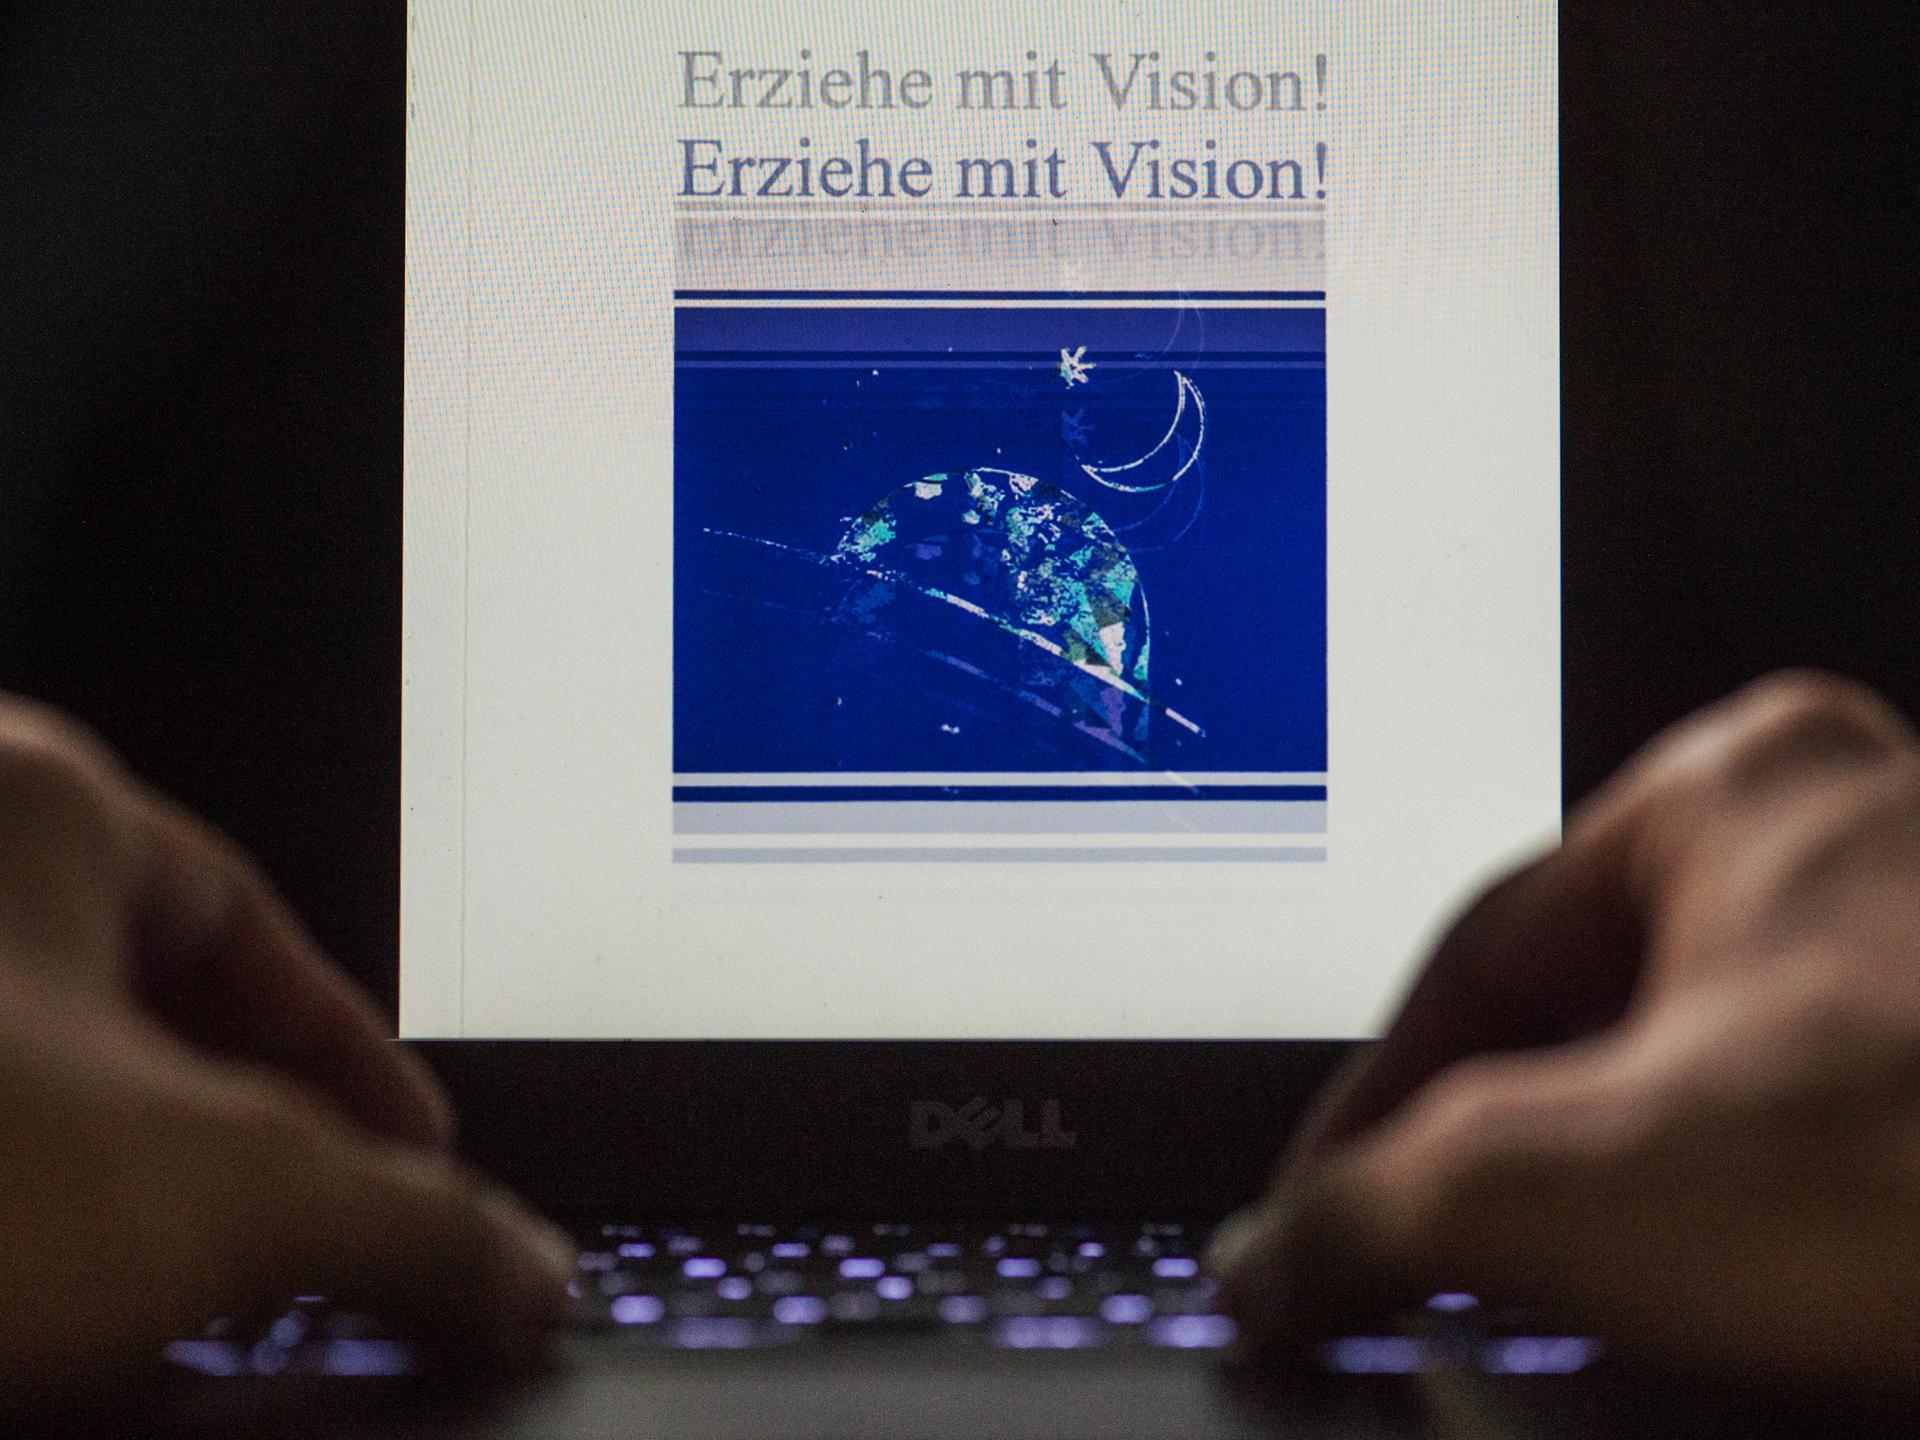 Nahaufnahme von zwei männlichen Händen an einem Laptop. Auf dem beleuchteten Display steht die Aufschrift "Erziehe mit Vision!" doppelt untereinander.